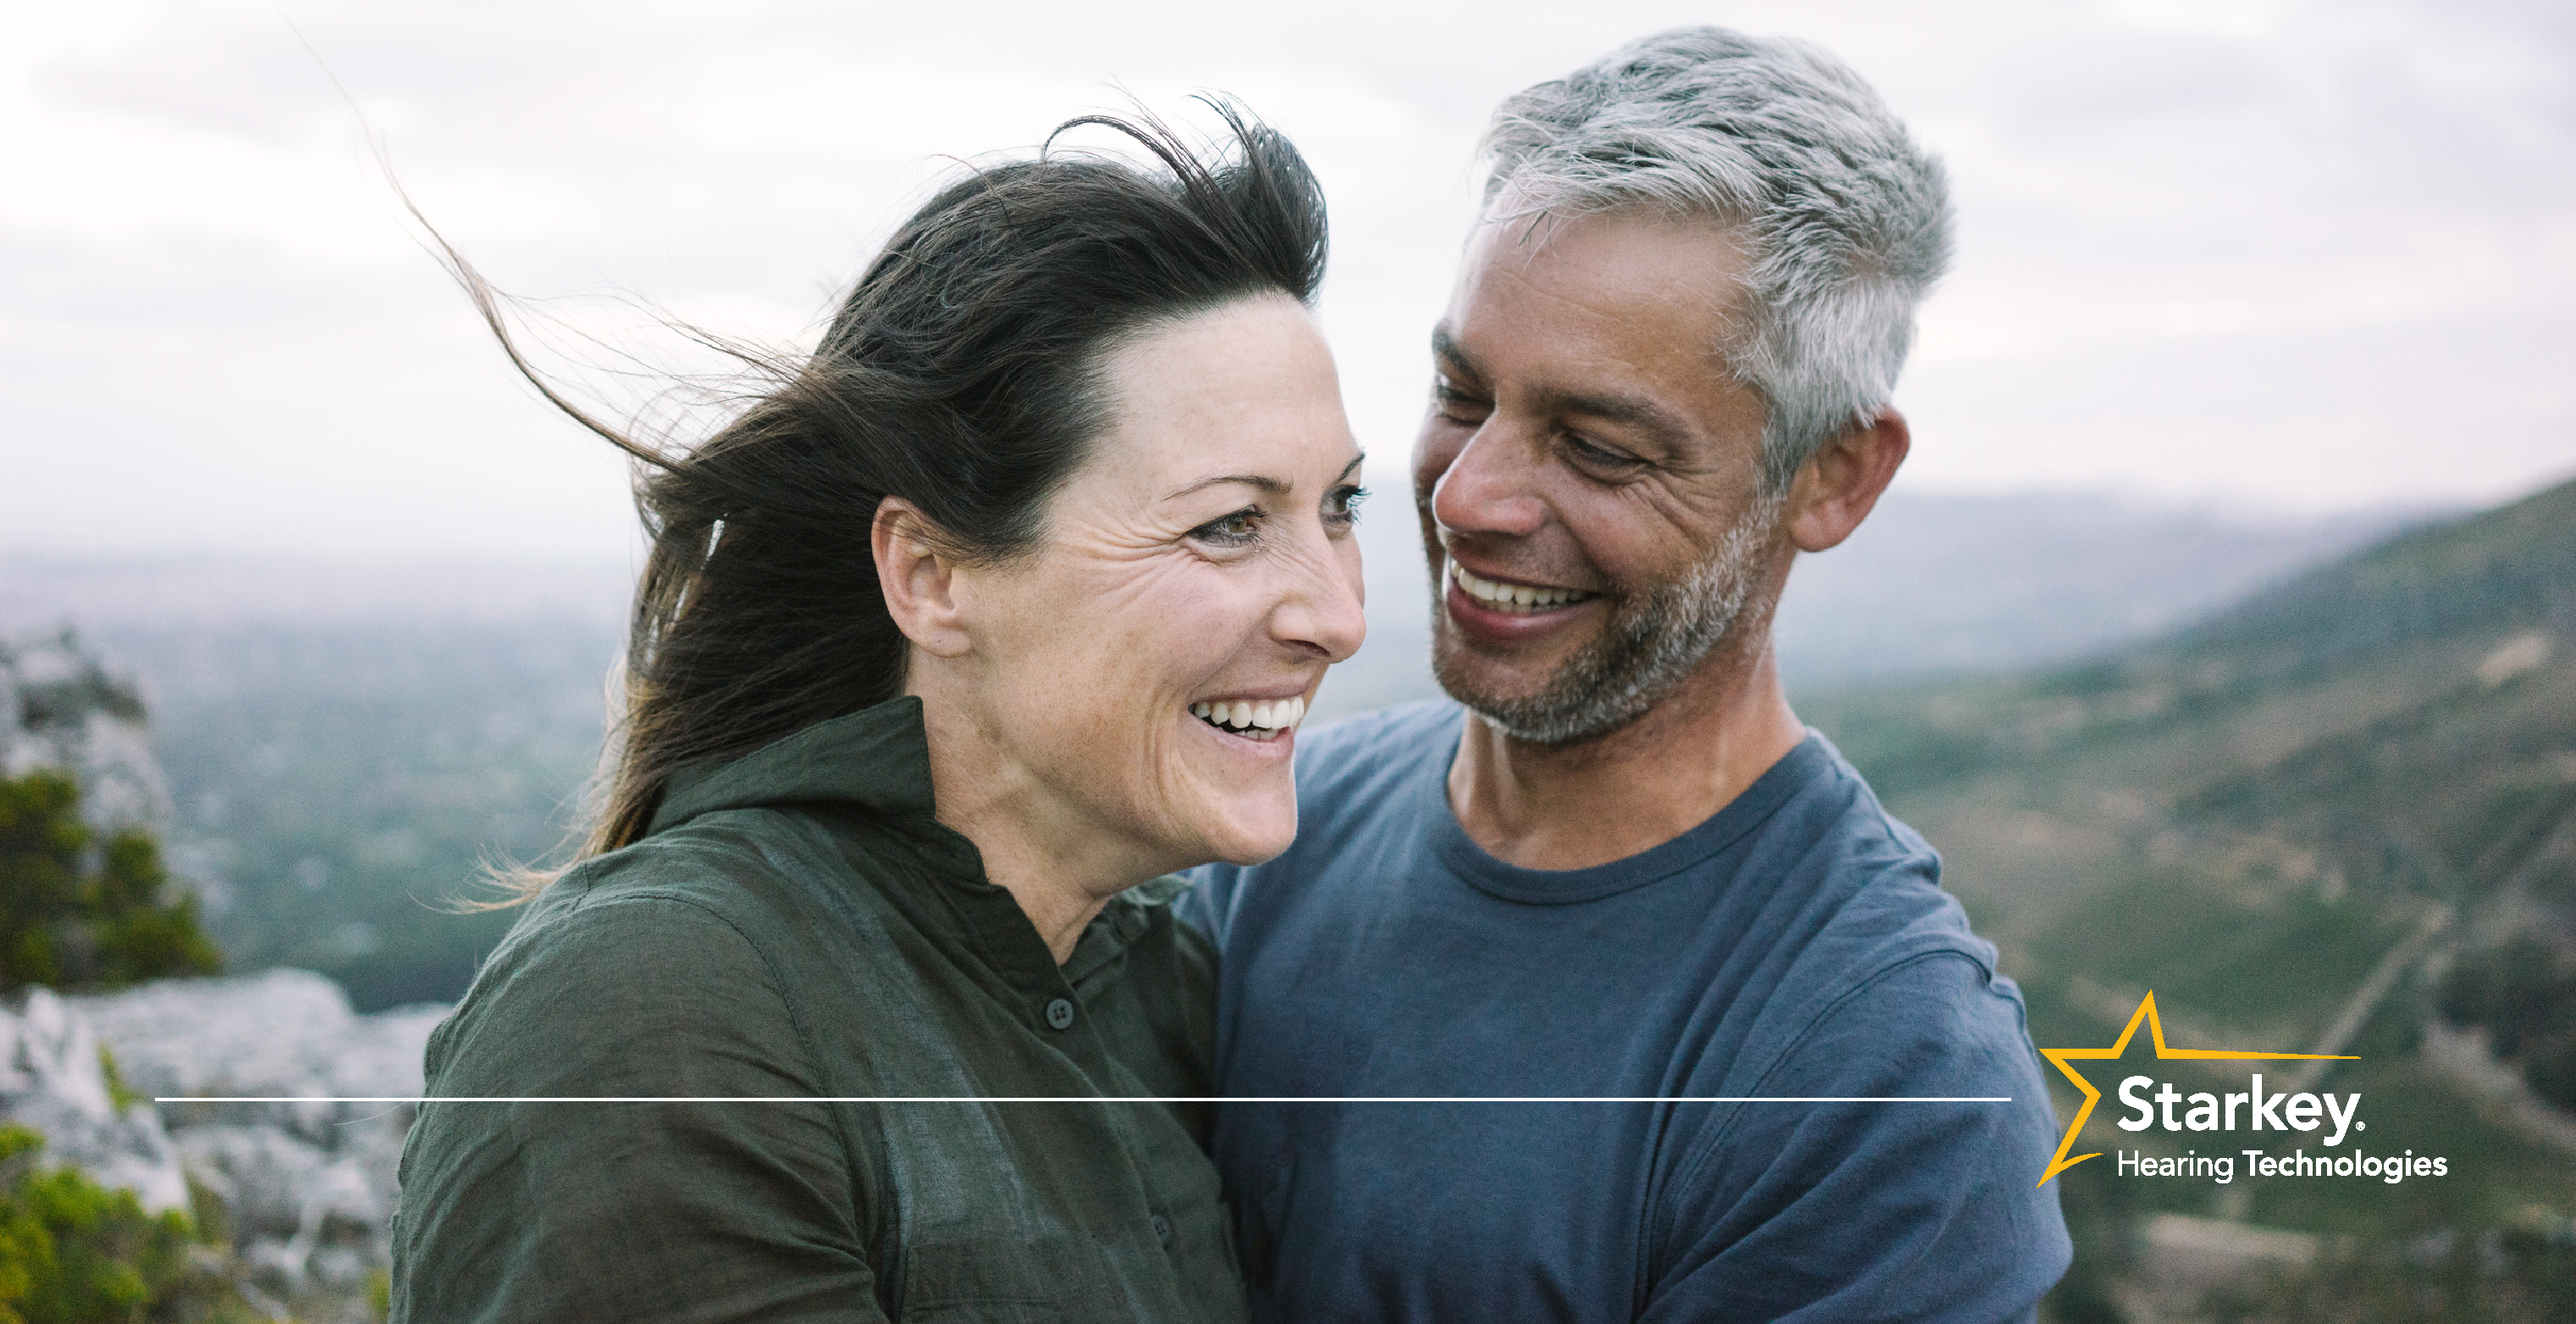 Homme aux cheveux gris souriant debout à côté d'une femme aux cheveux bruns souriant sur une falaise